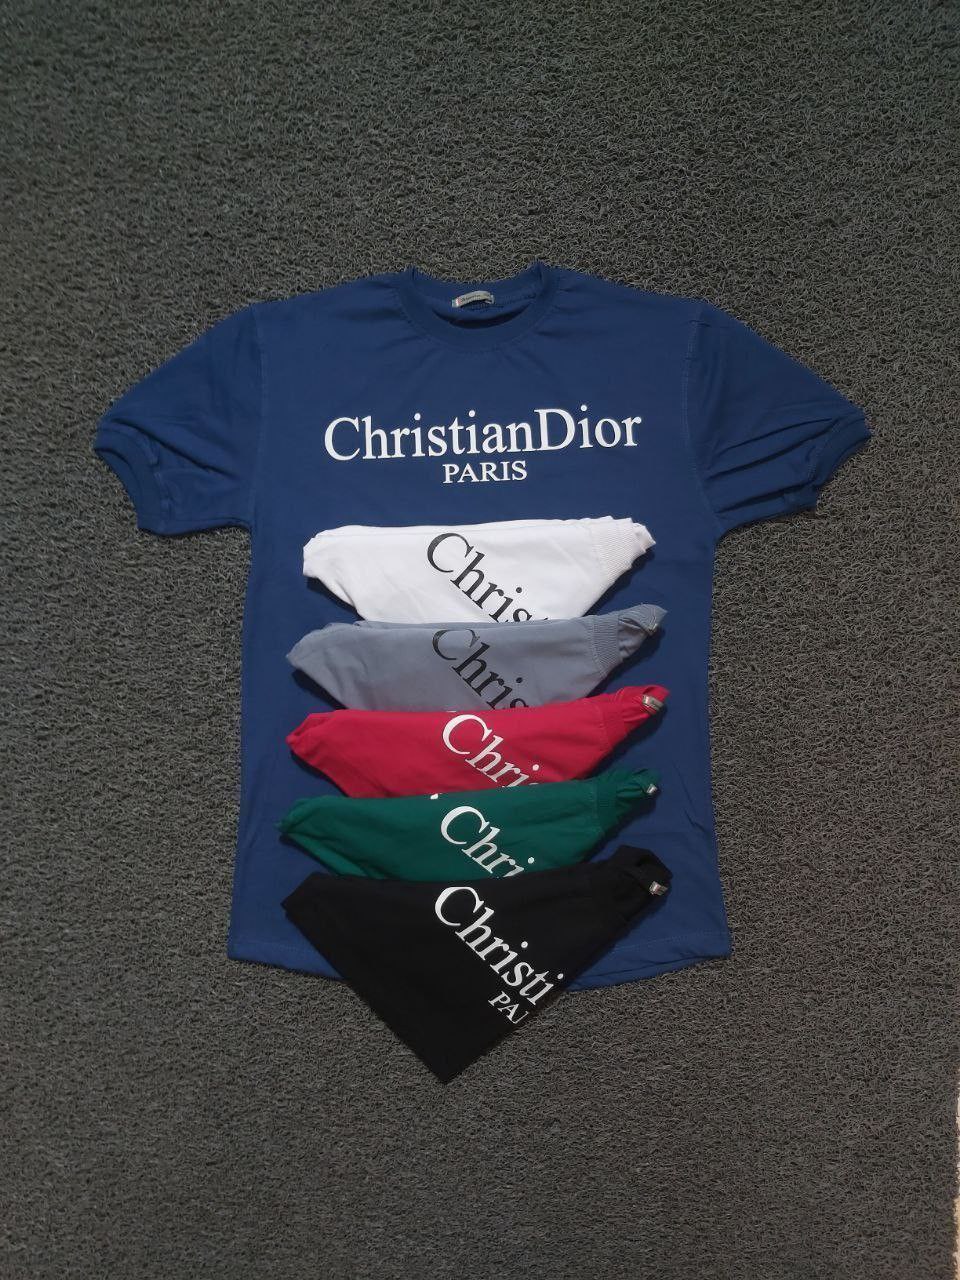 خرید عمده تیشرت سایز L,XL,2XL جنس پنبه سوپر طرح Christian Dior دارای رنگ بندی